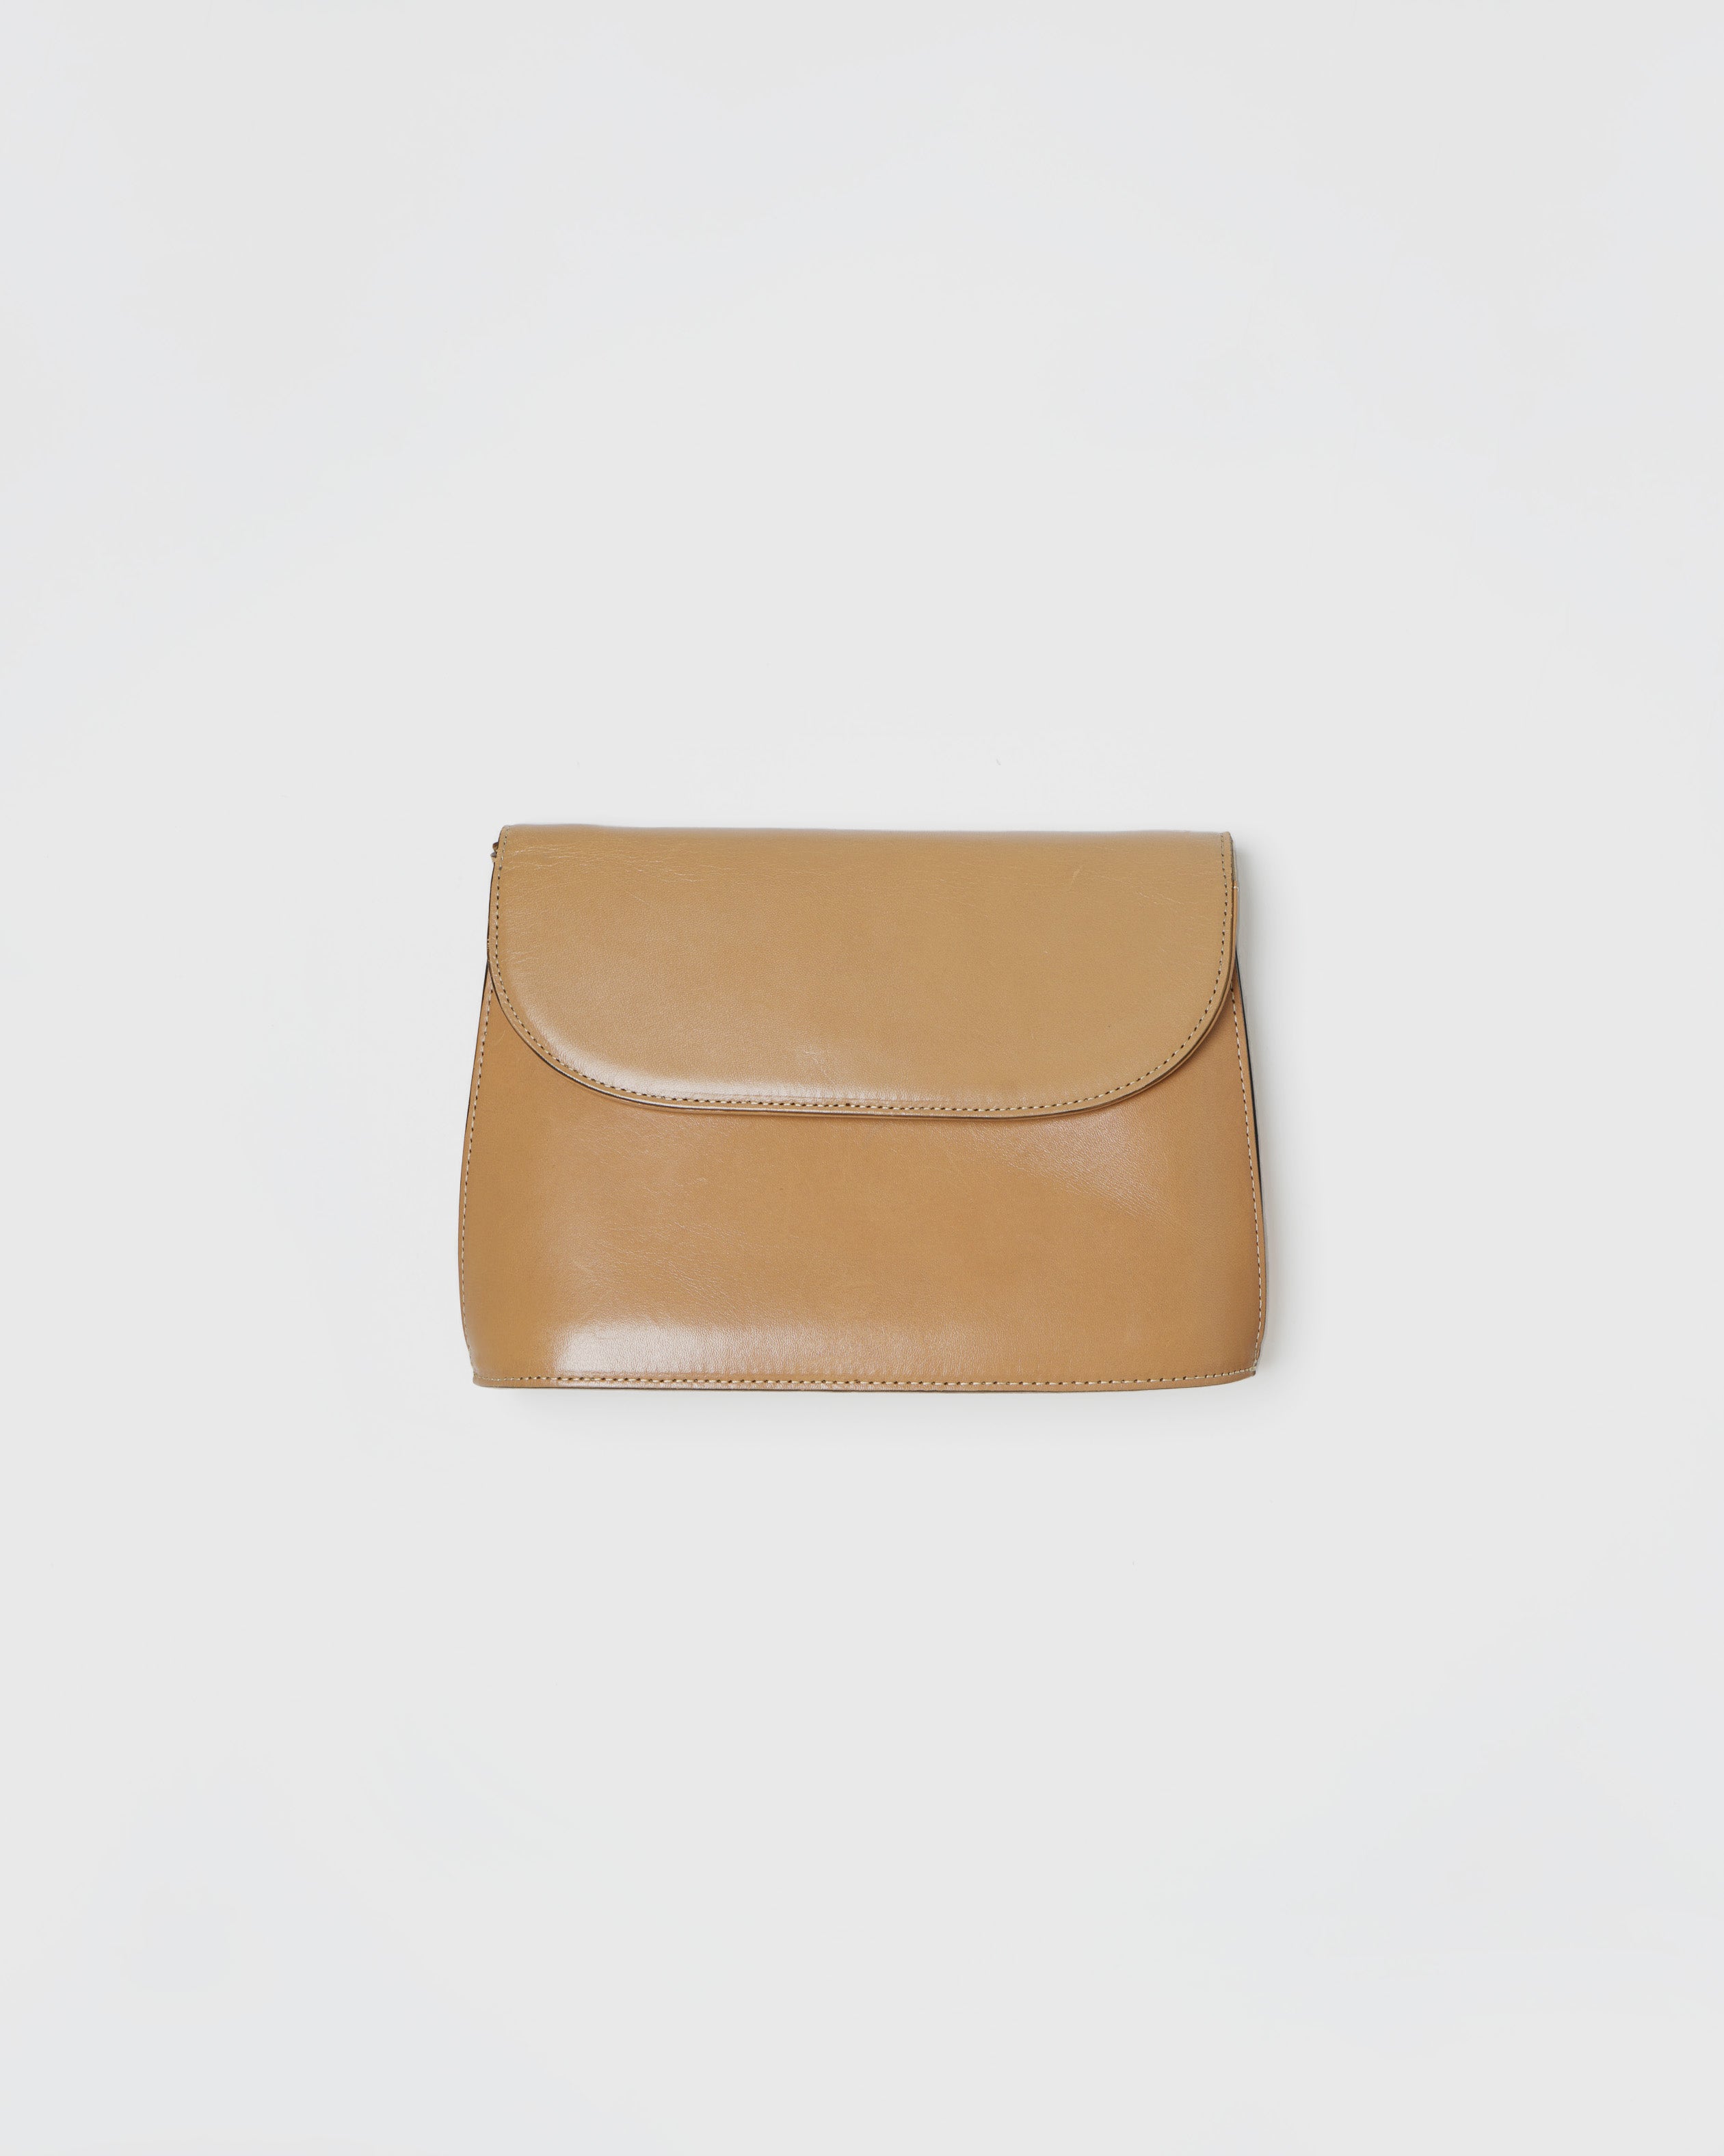 Issey Miyake Miyake Design Studio Leather Bag